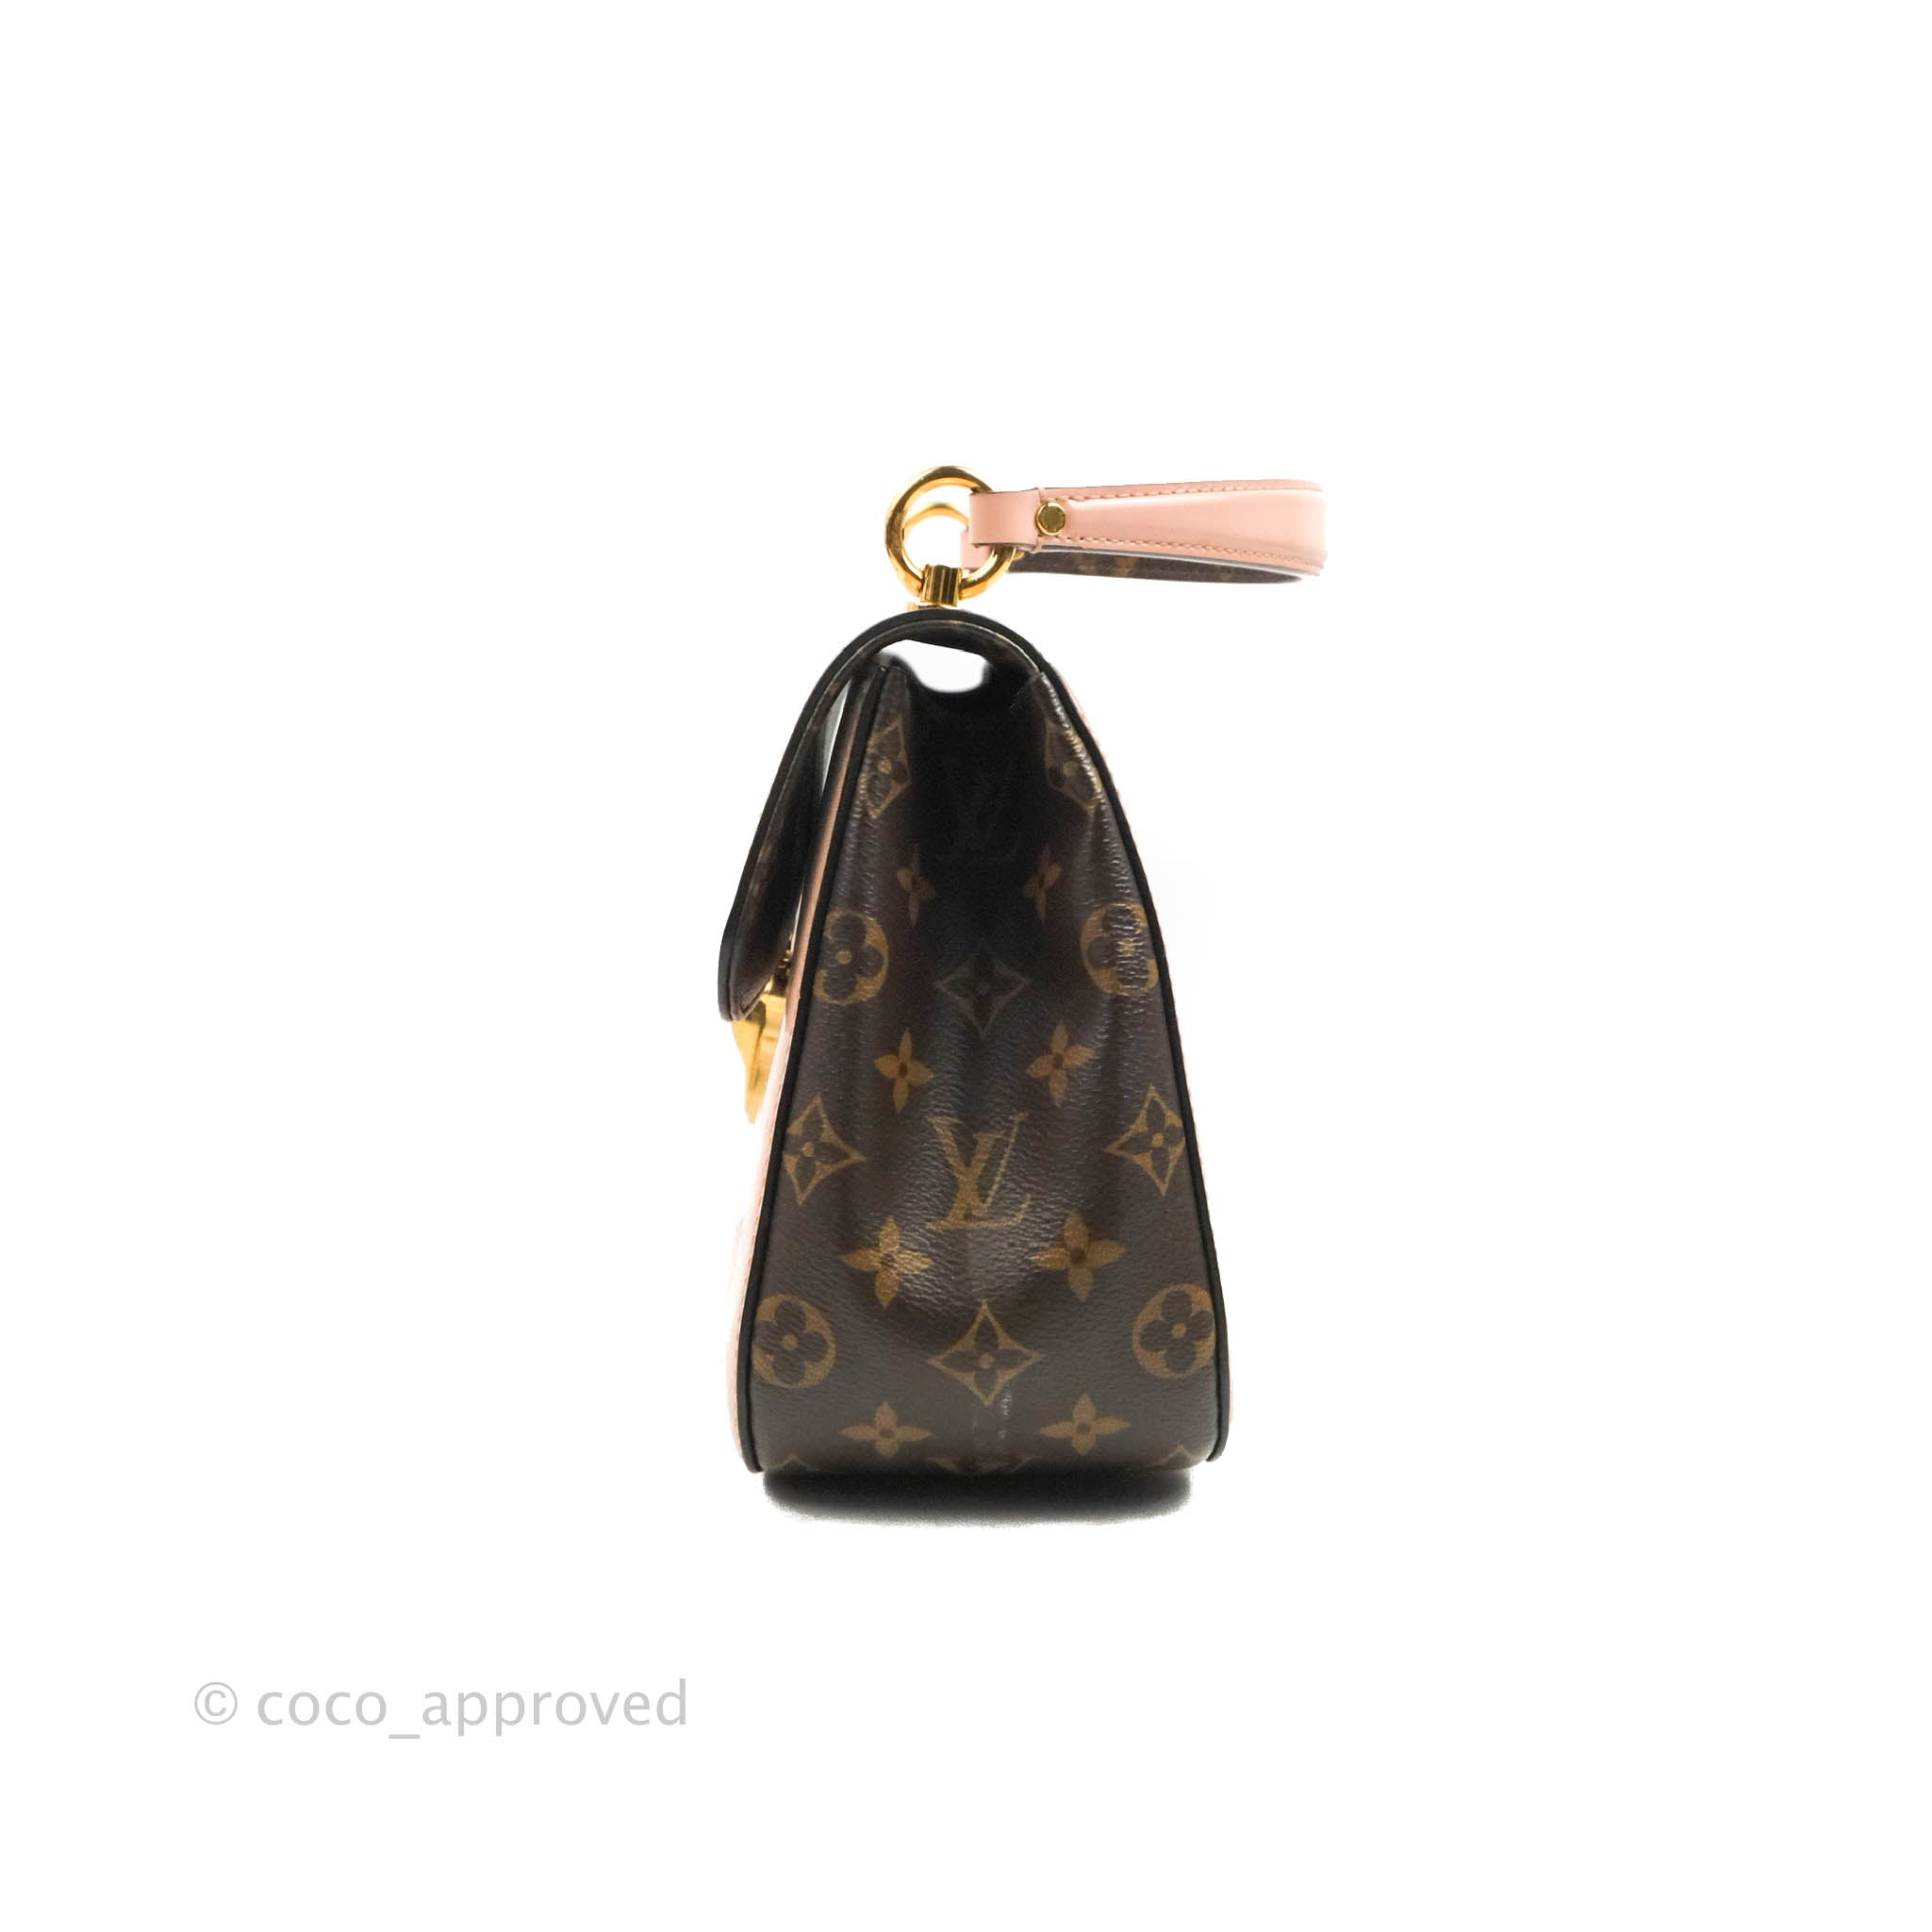 Louis Vuitton Cherrywood PM Patent Leather Shoulder Bag